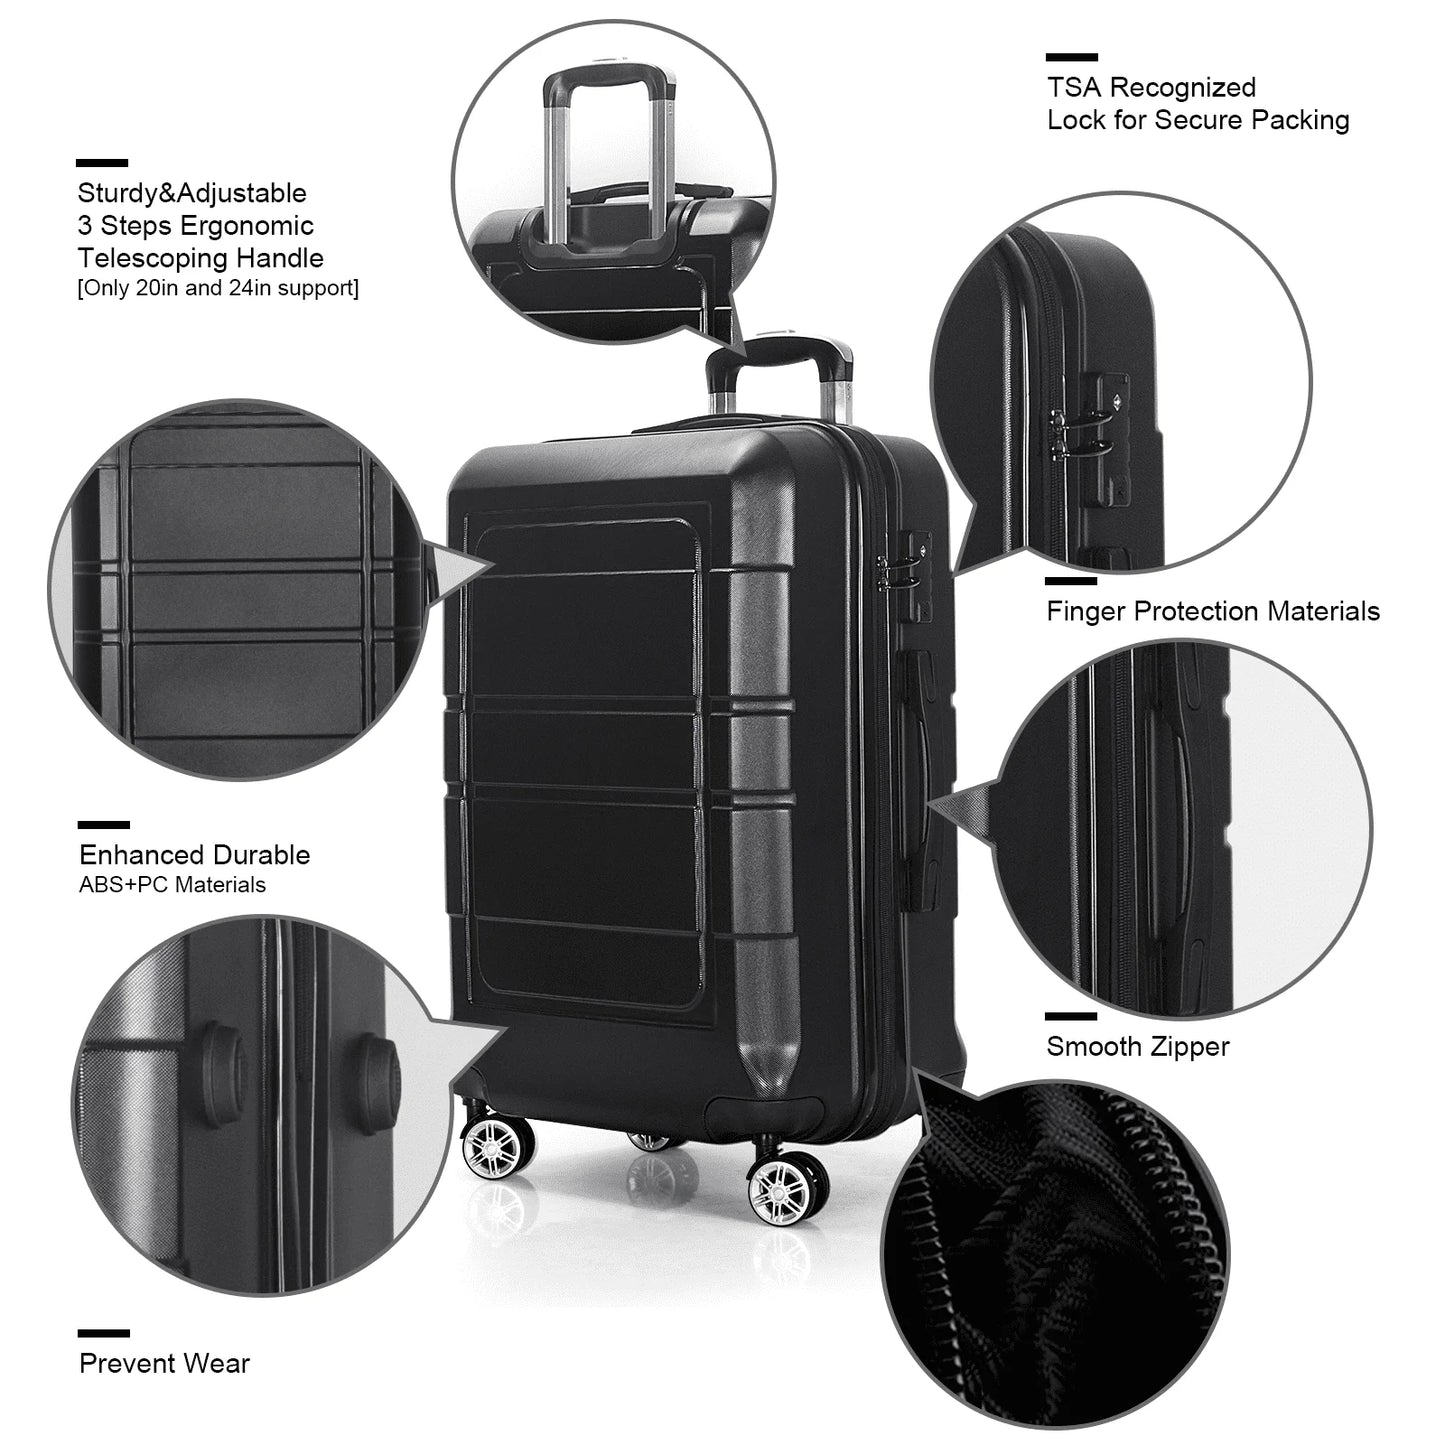 3 Pcs Hardside Luggage Set, with TSA Lock